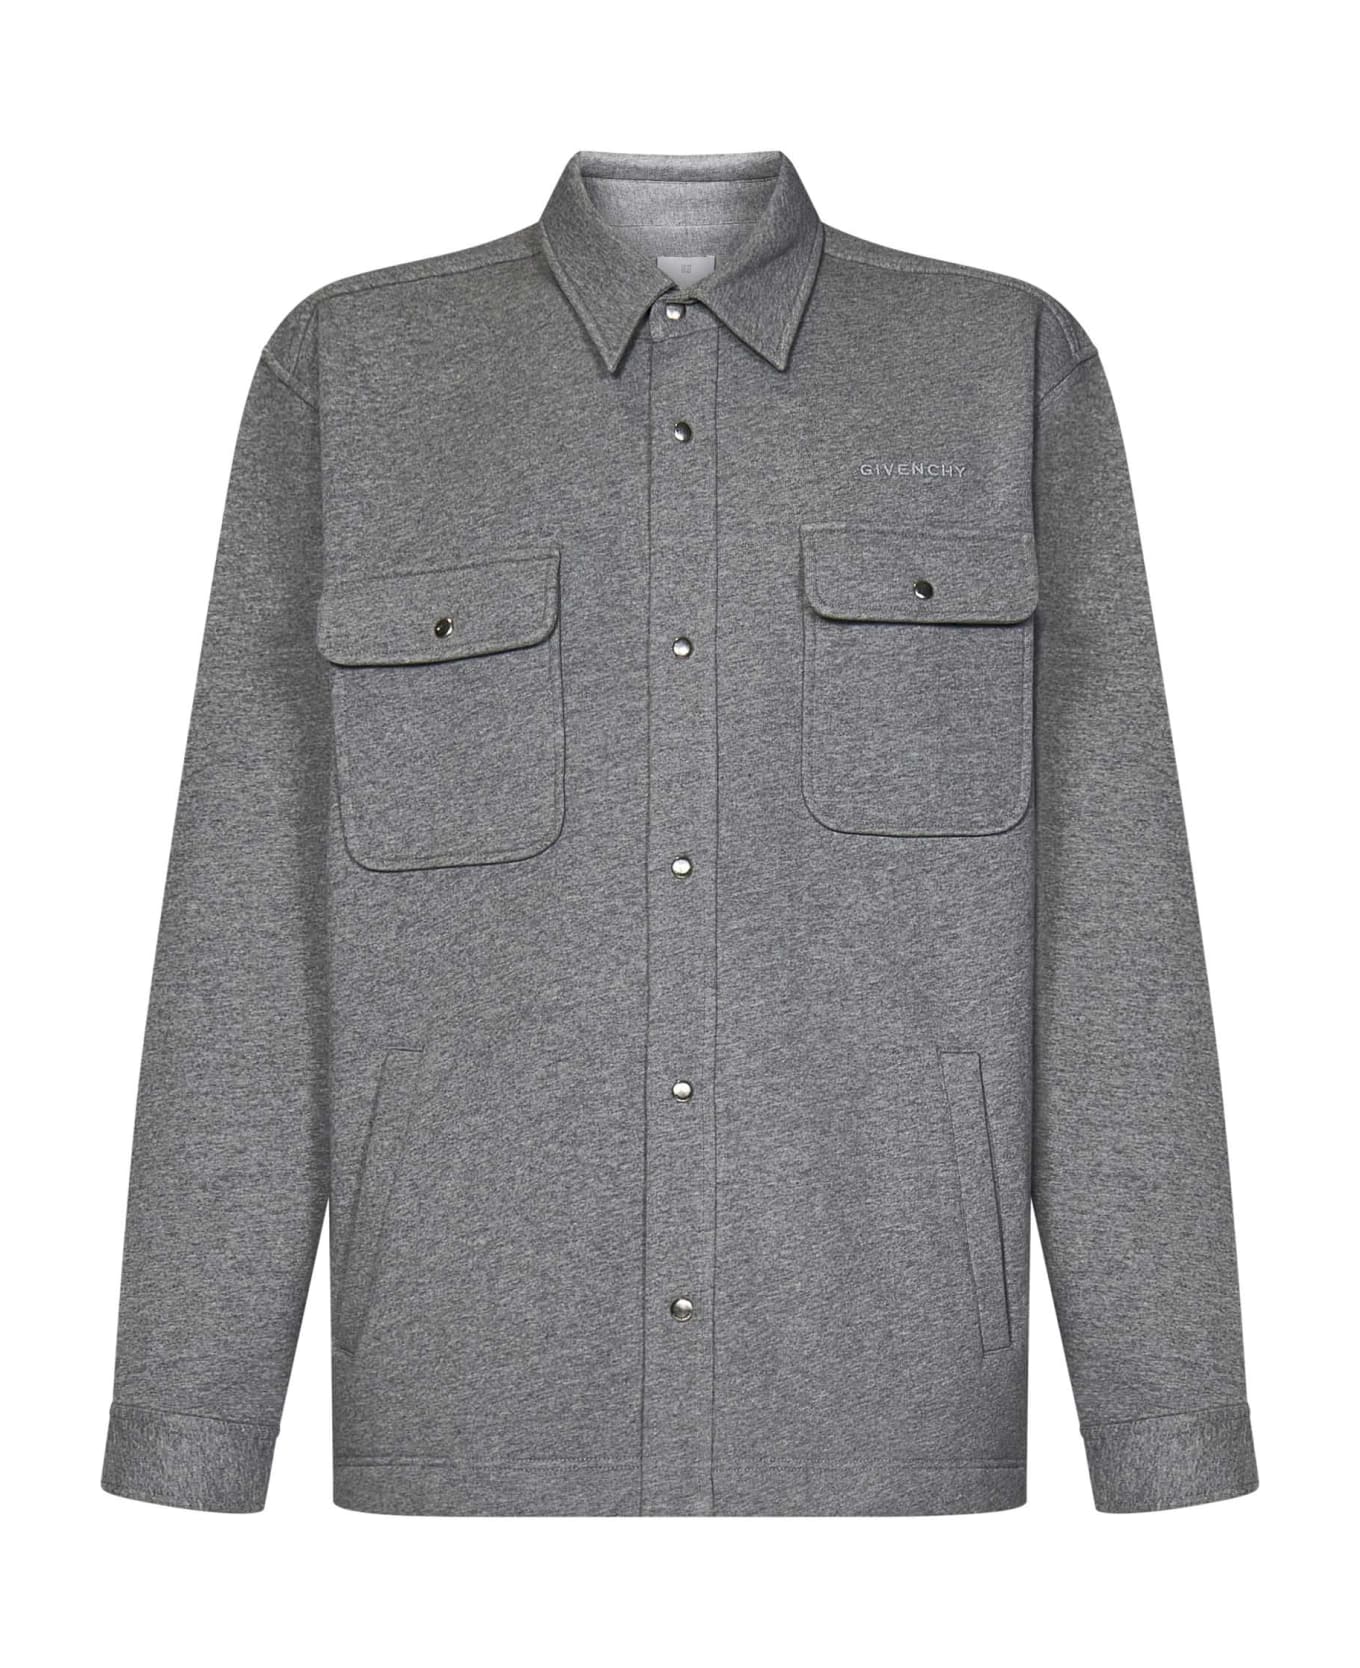 Givenchy Shirt - Grey